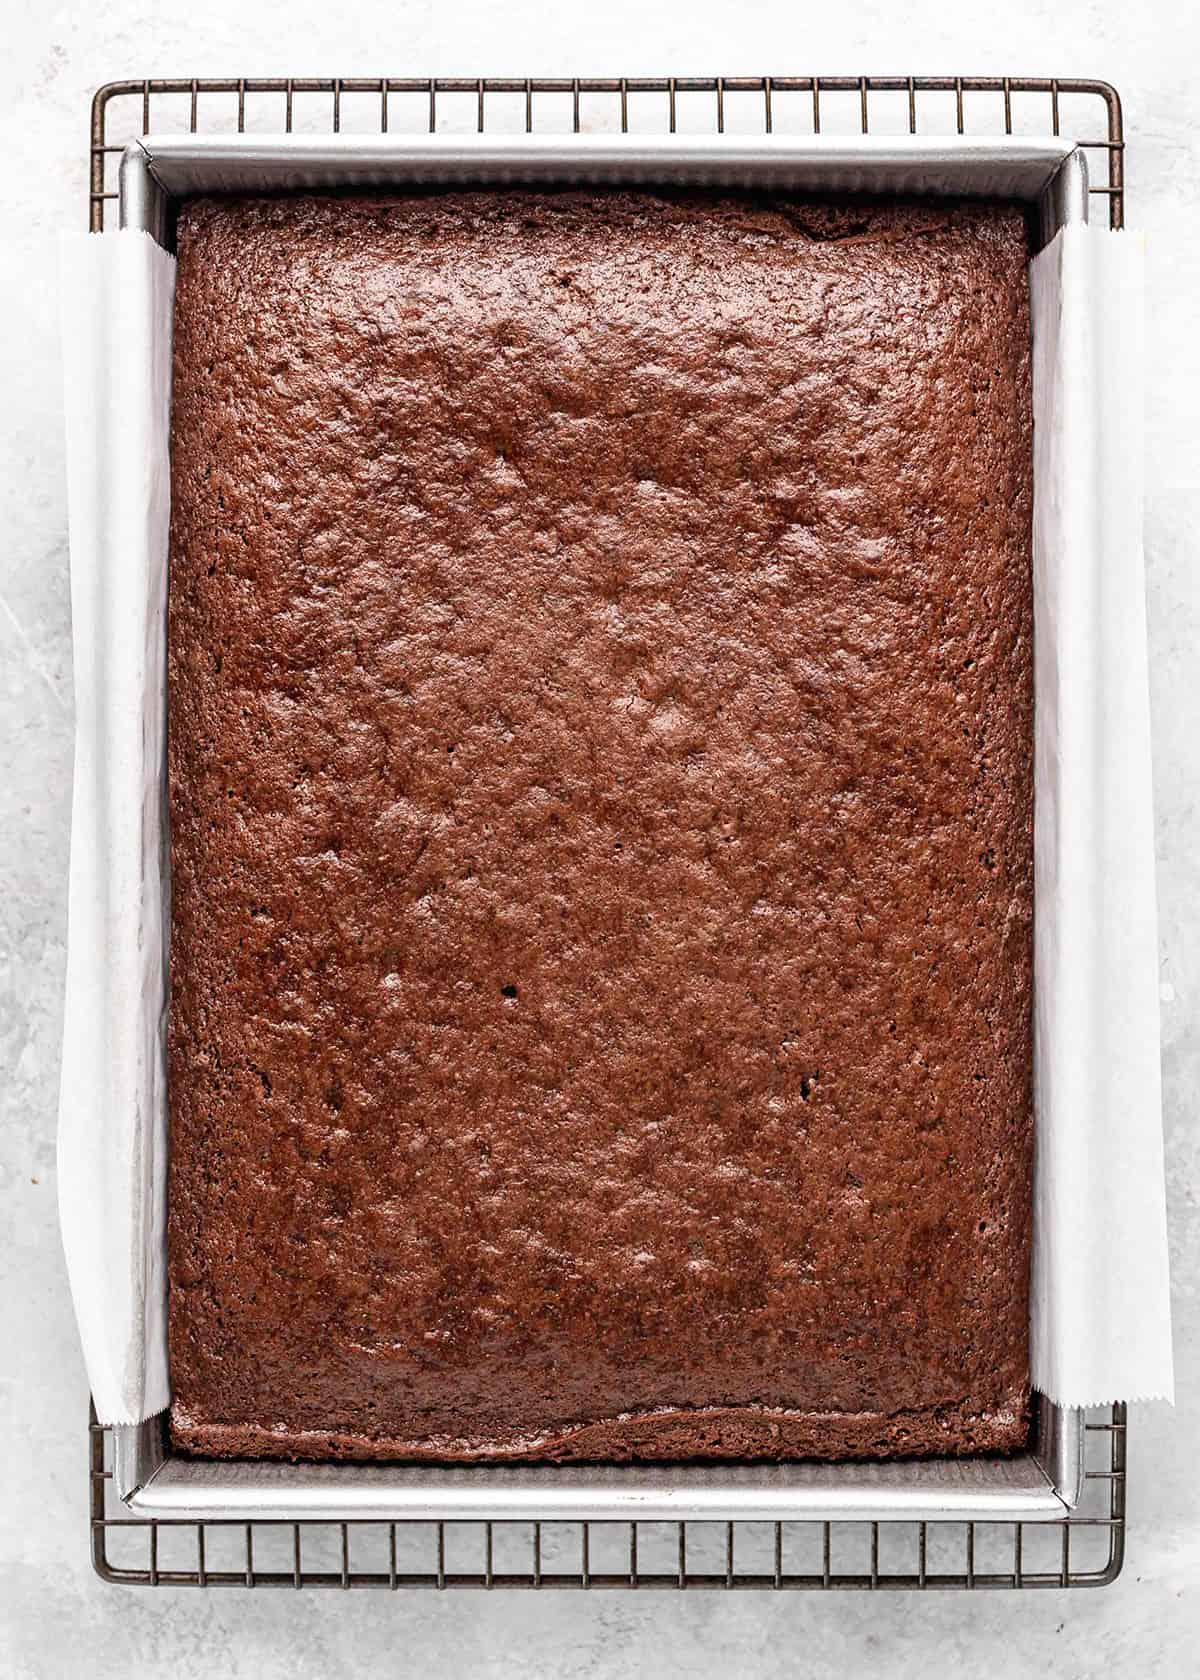 chocolate sheet cake in a baking pan after baking